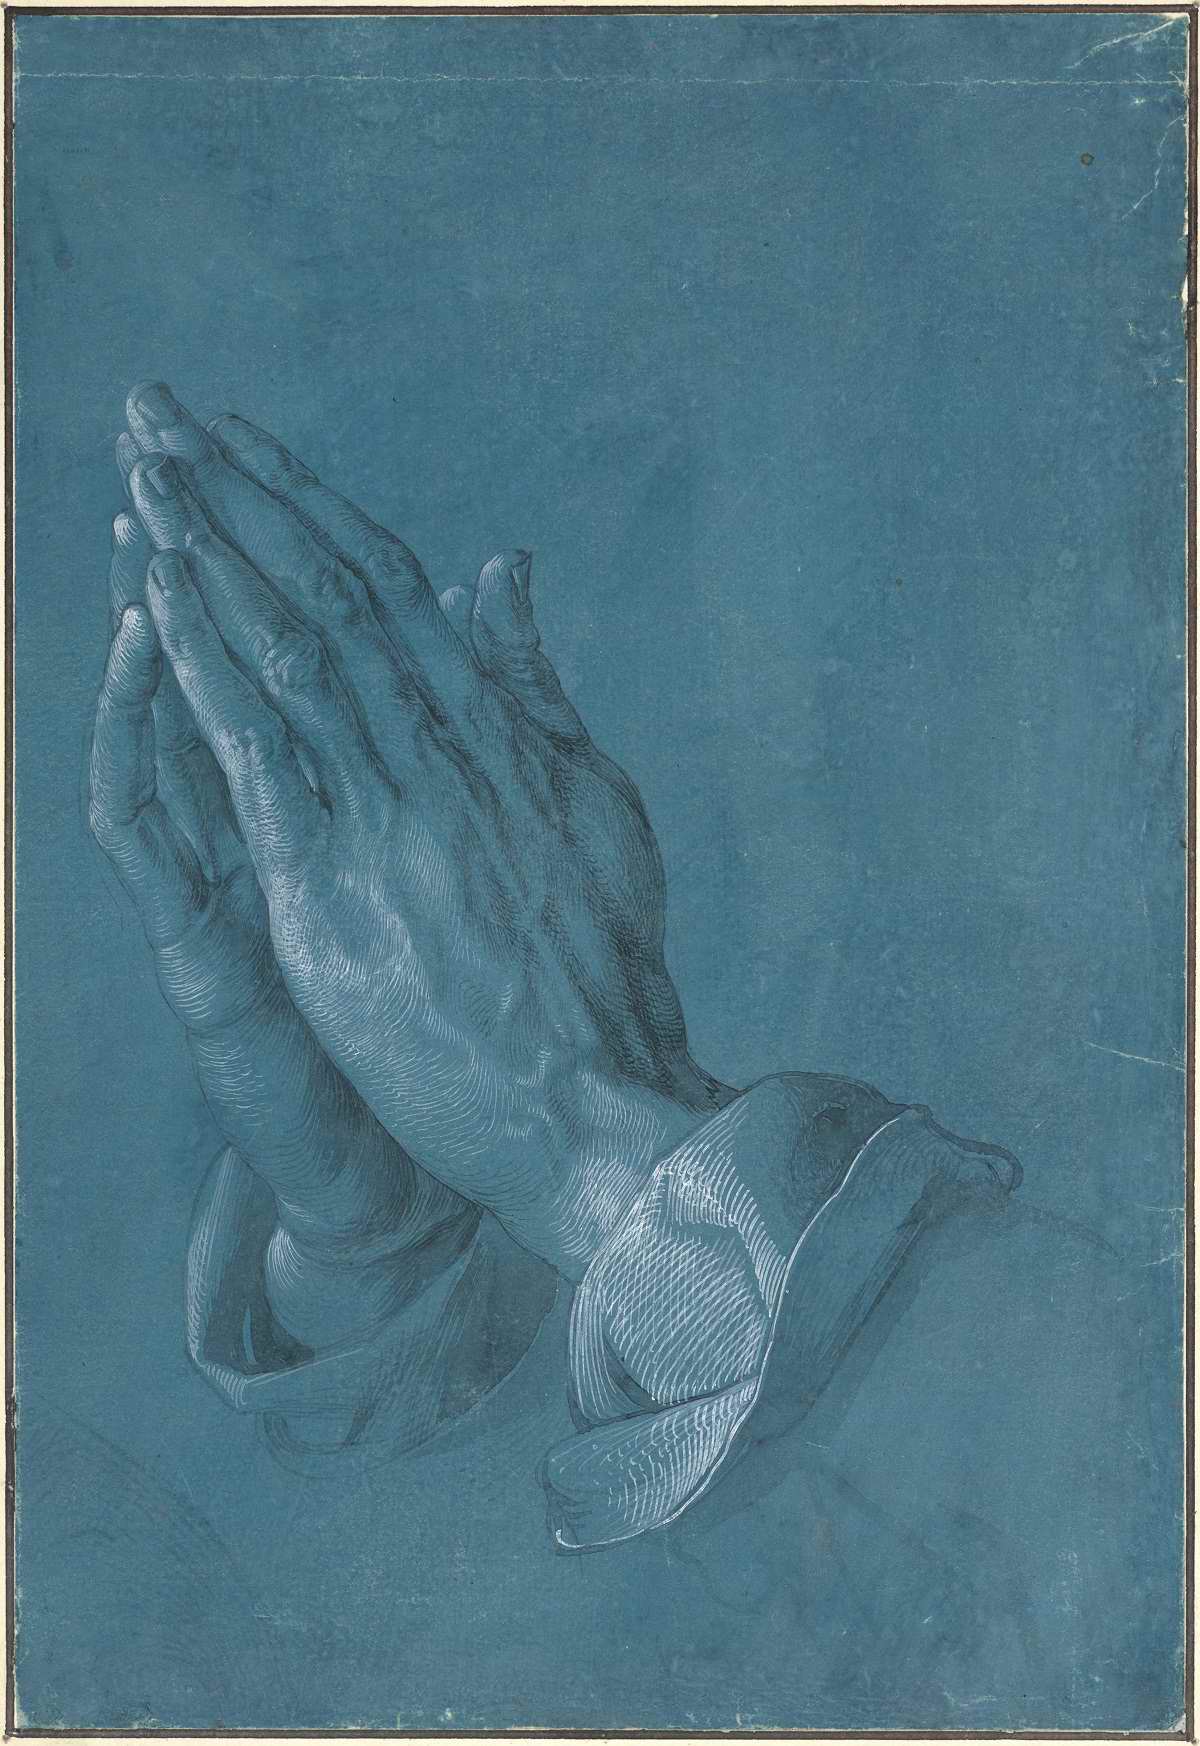 Картину Альбрехта Дюрера «Руки молящегося» видели все, но мало кто знает тайну ее создания